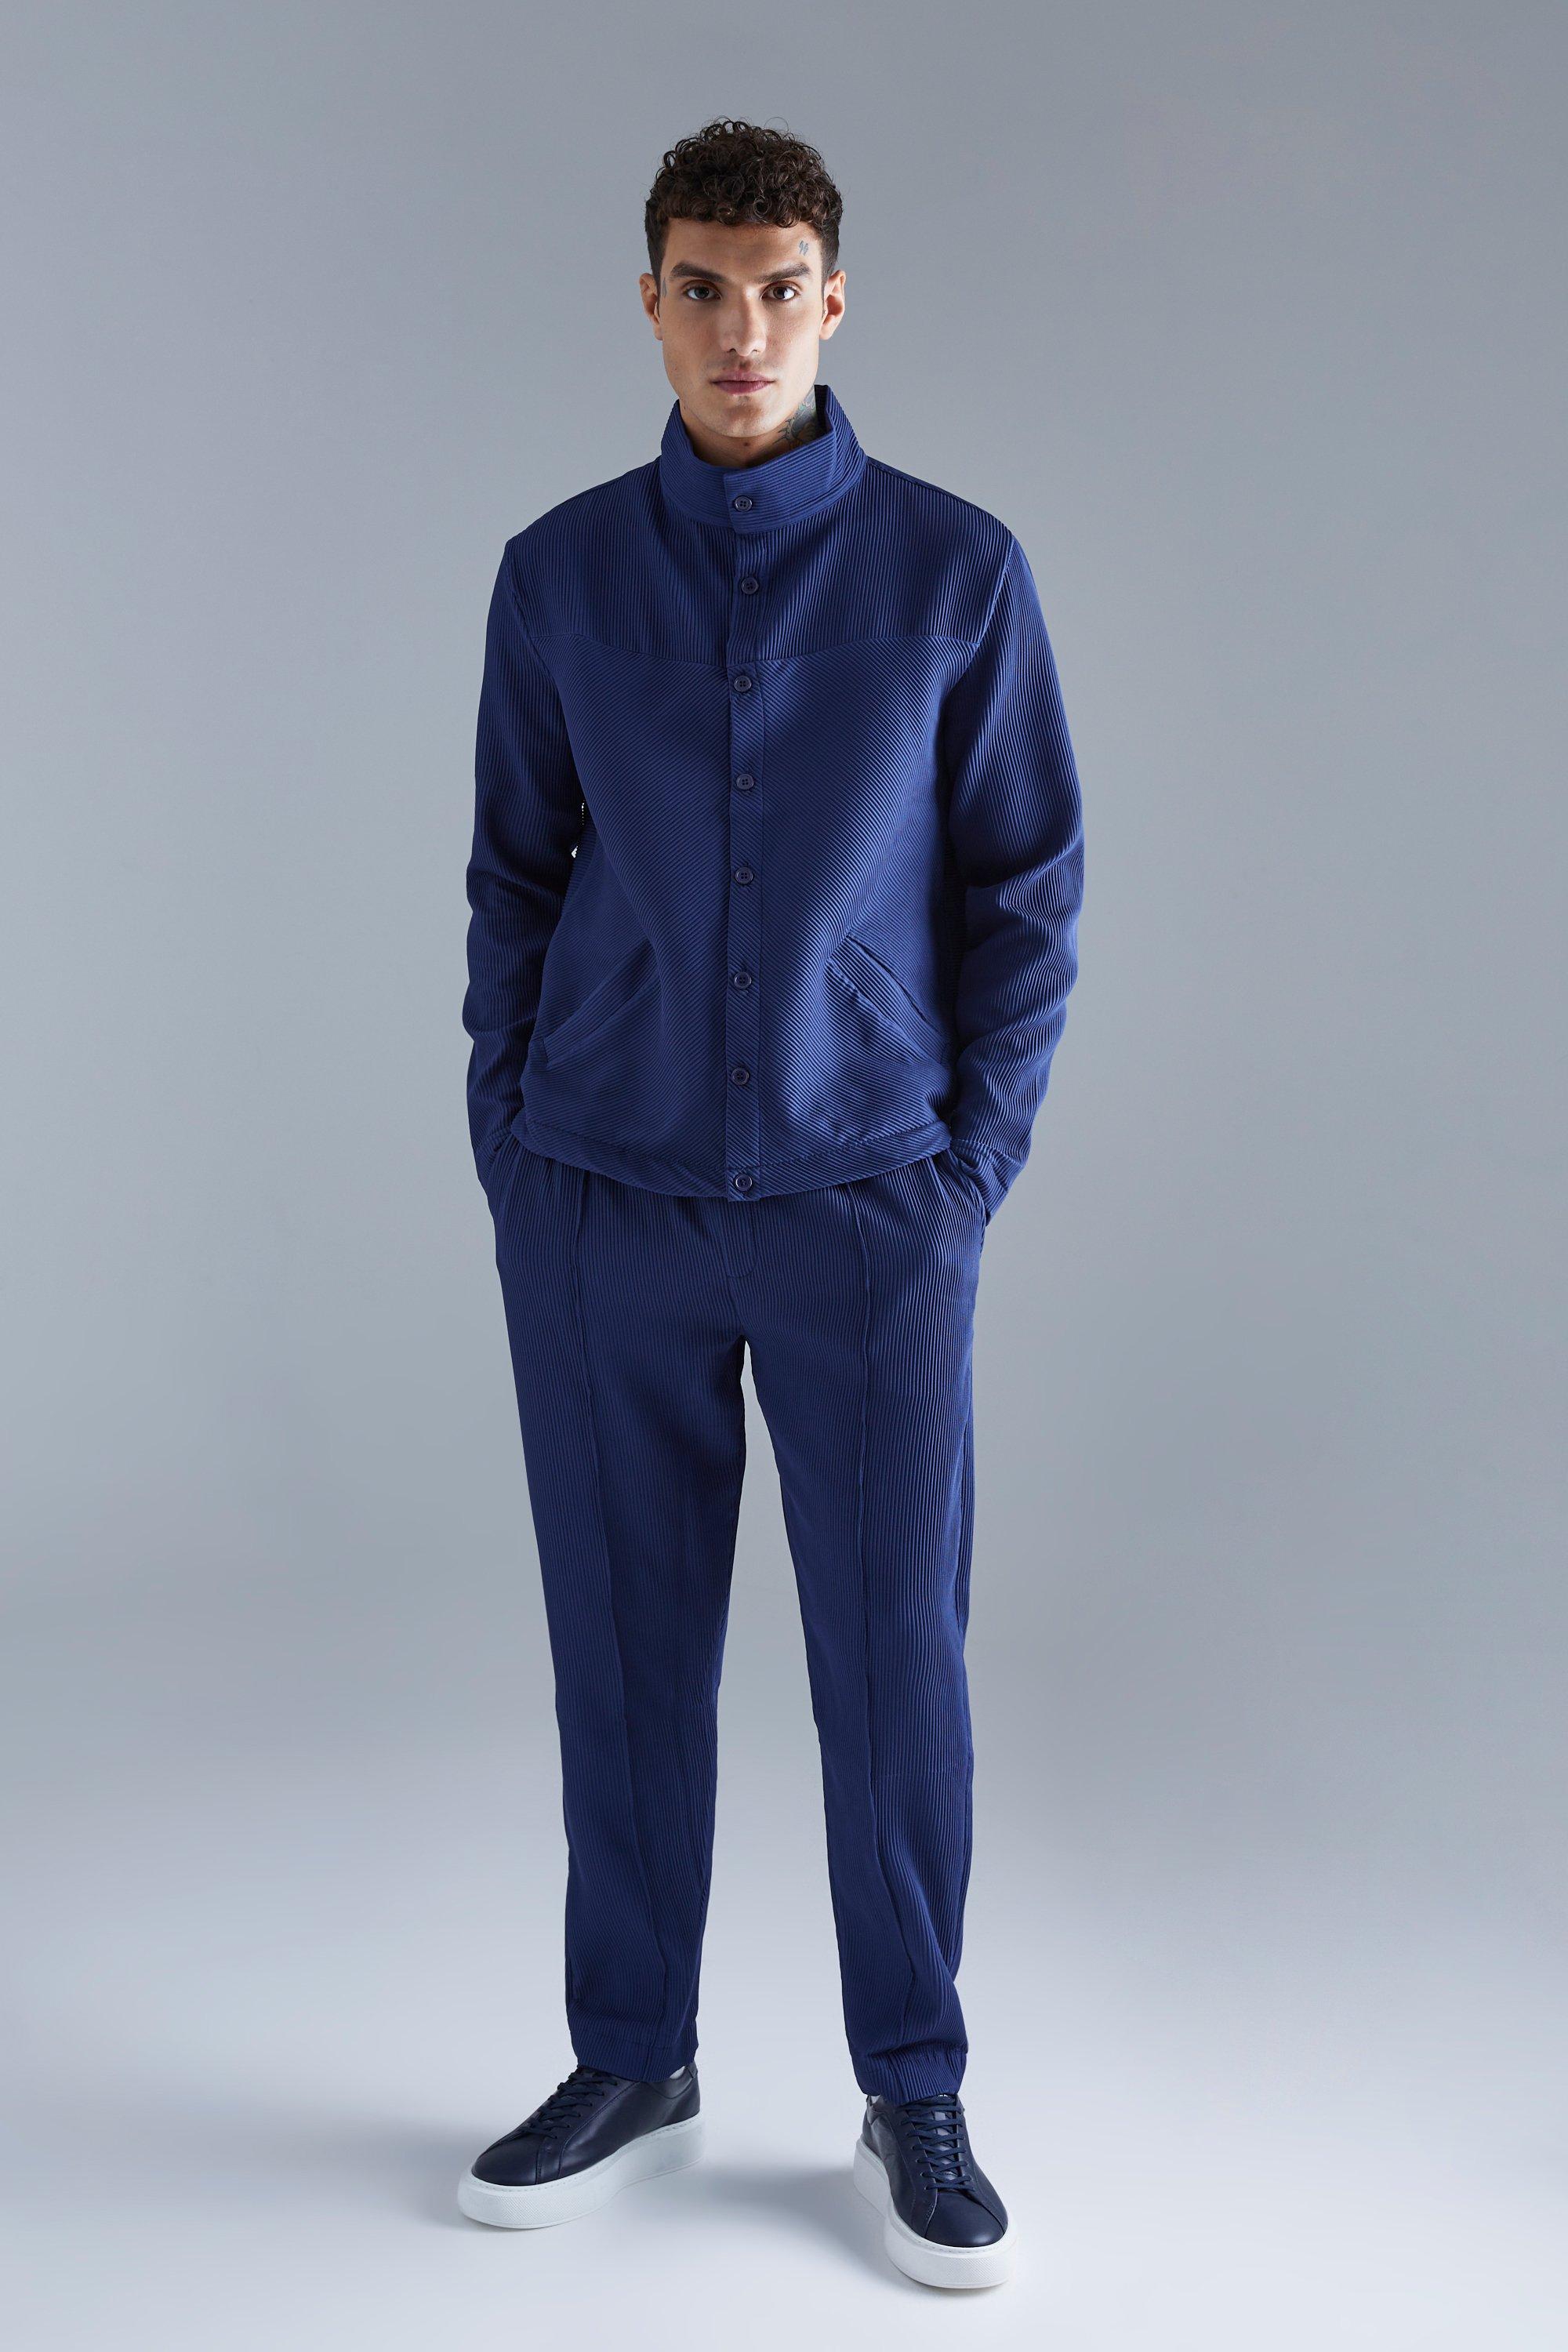 ensemble plissé avec veste harrington et pantalon à pinces homme - bleu - s, bleu